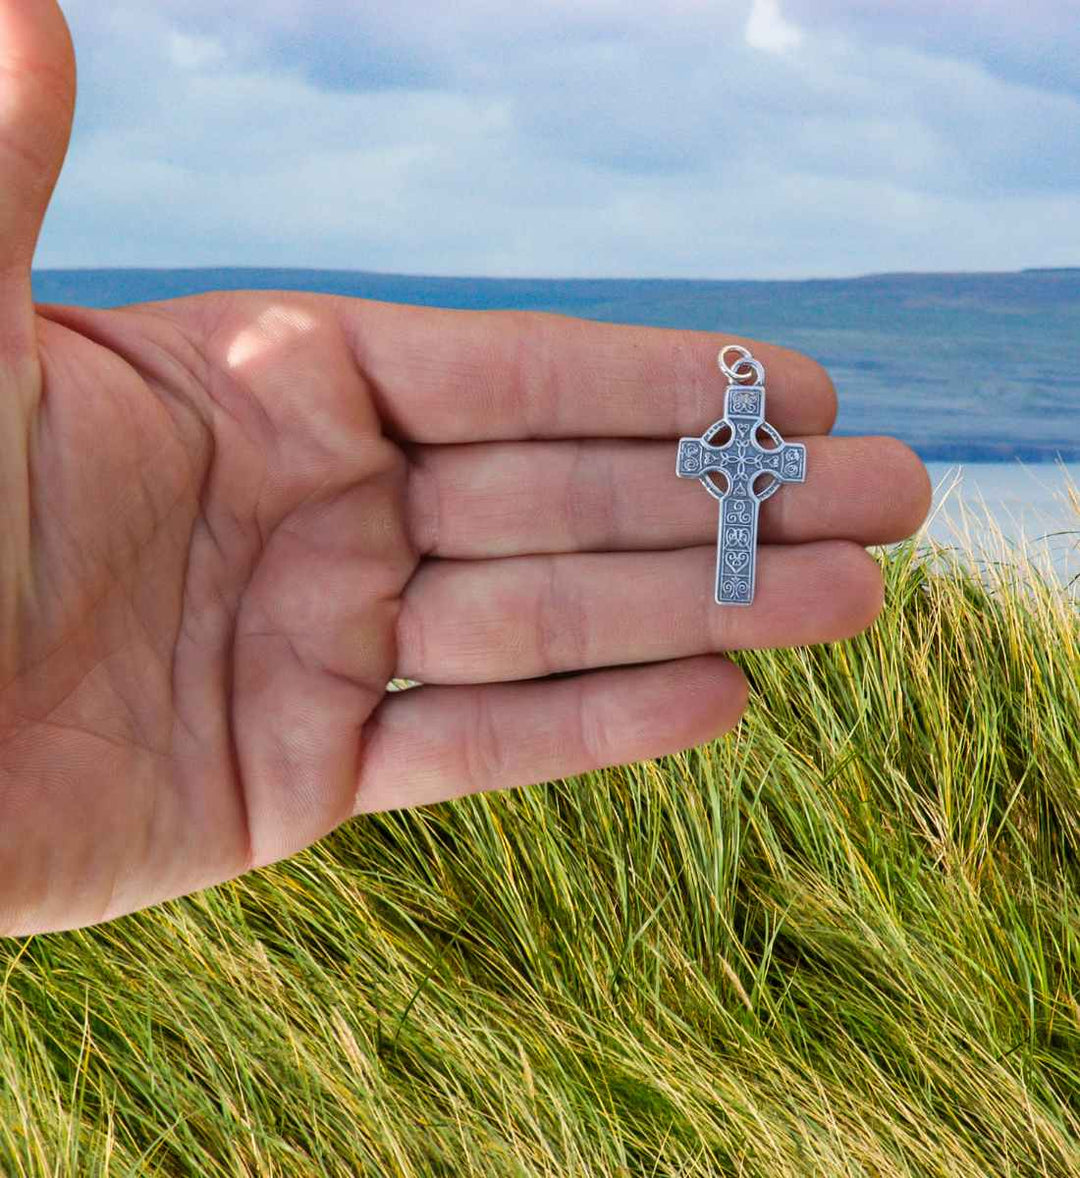 Erin's Erbe keltisches Silberkreuz wird in der Hand gehalten.